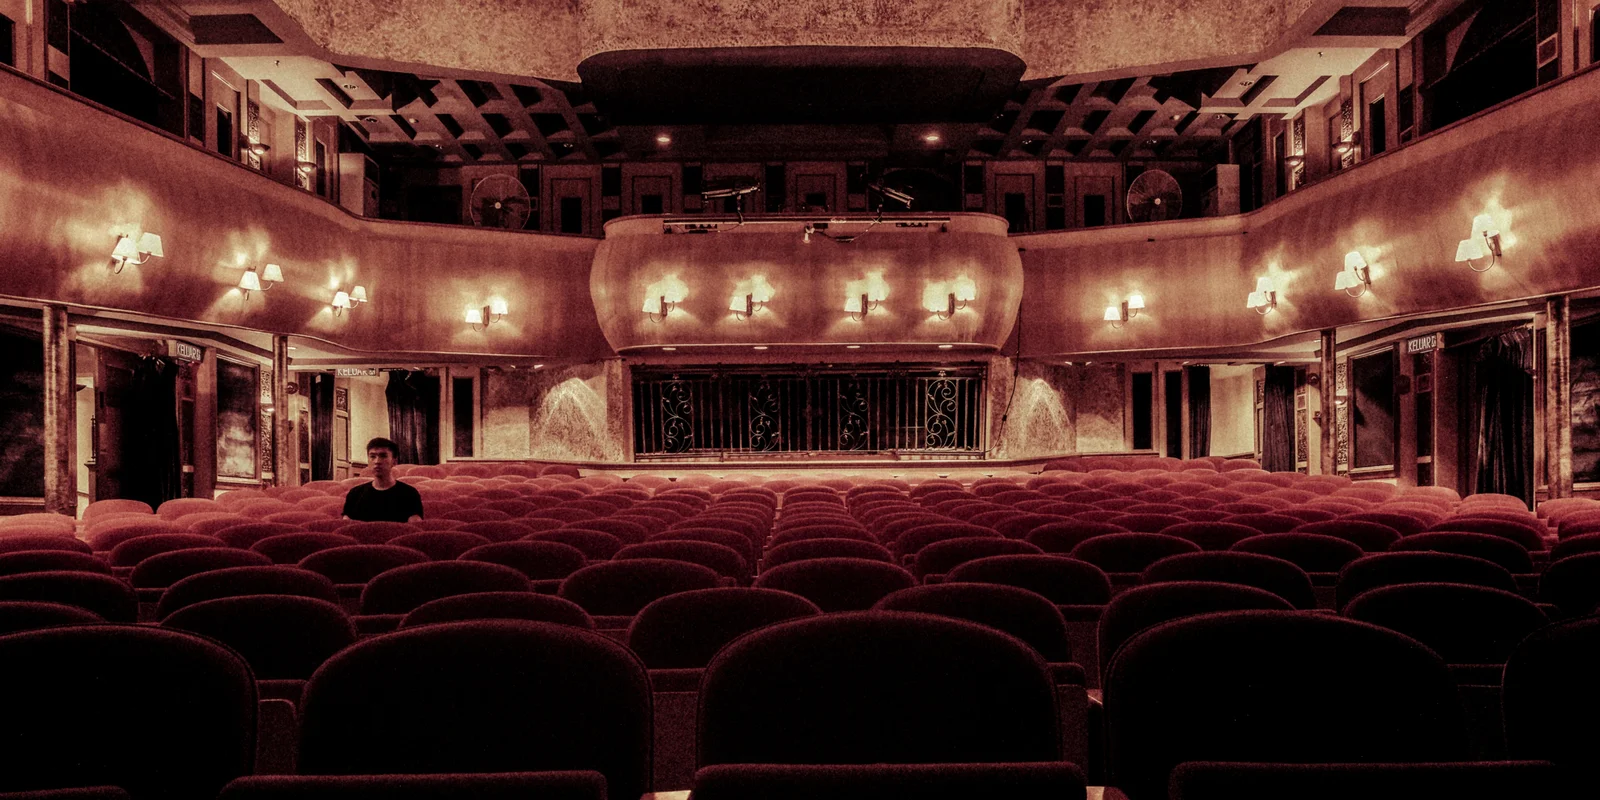 Ein Mann sitzt einsam im Zuschauerraum eines großen Theatersaals.